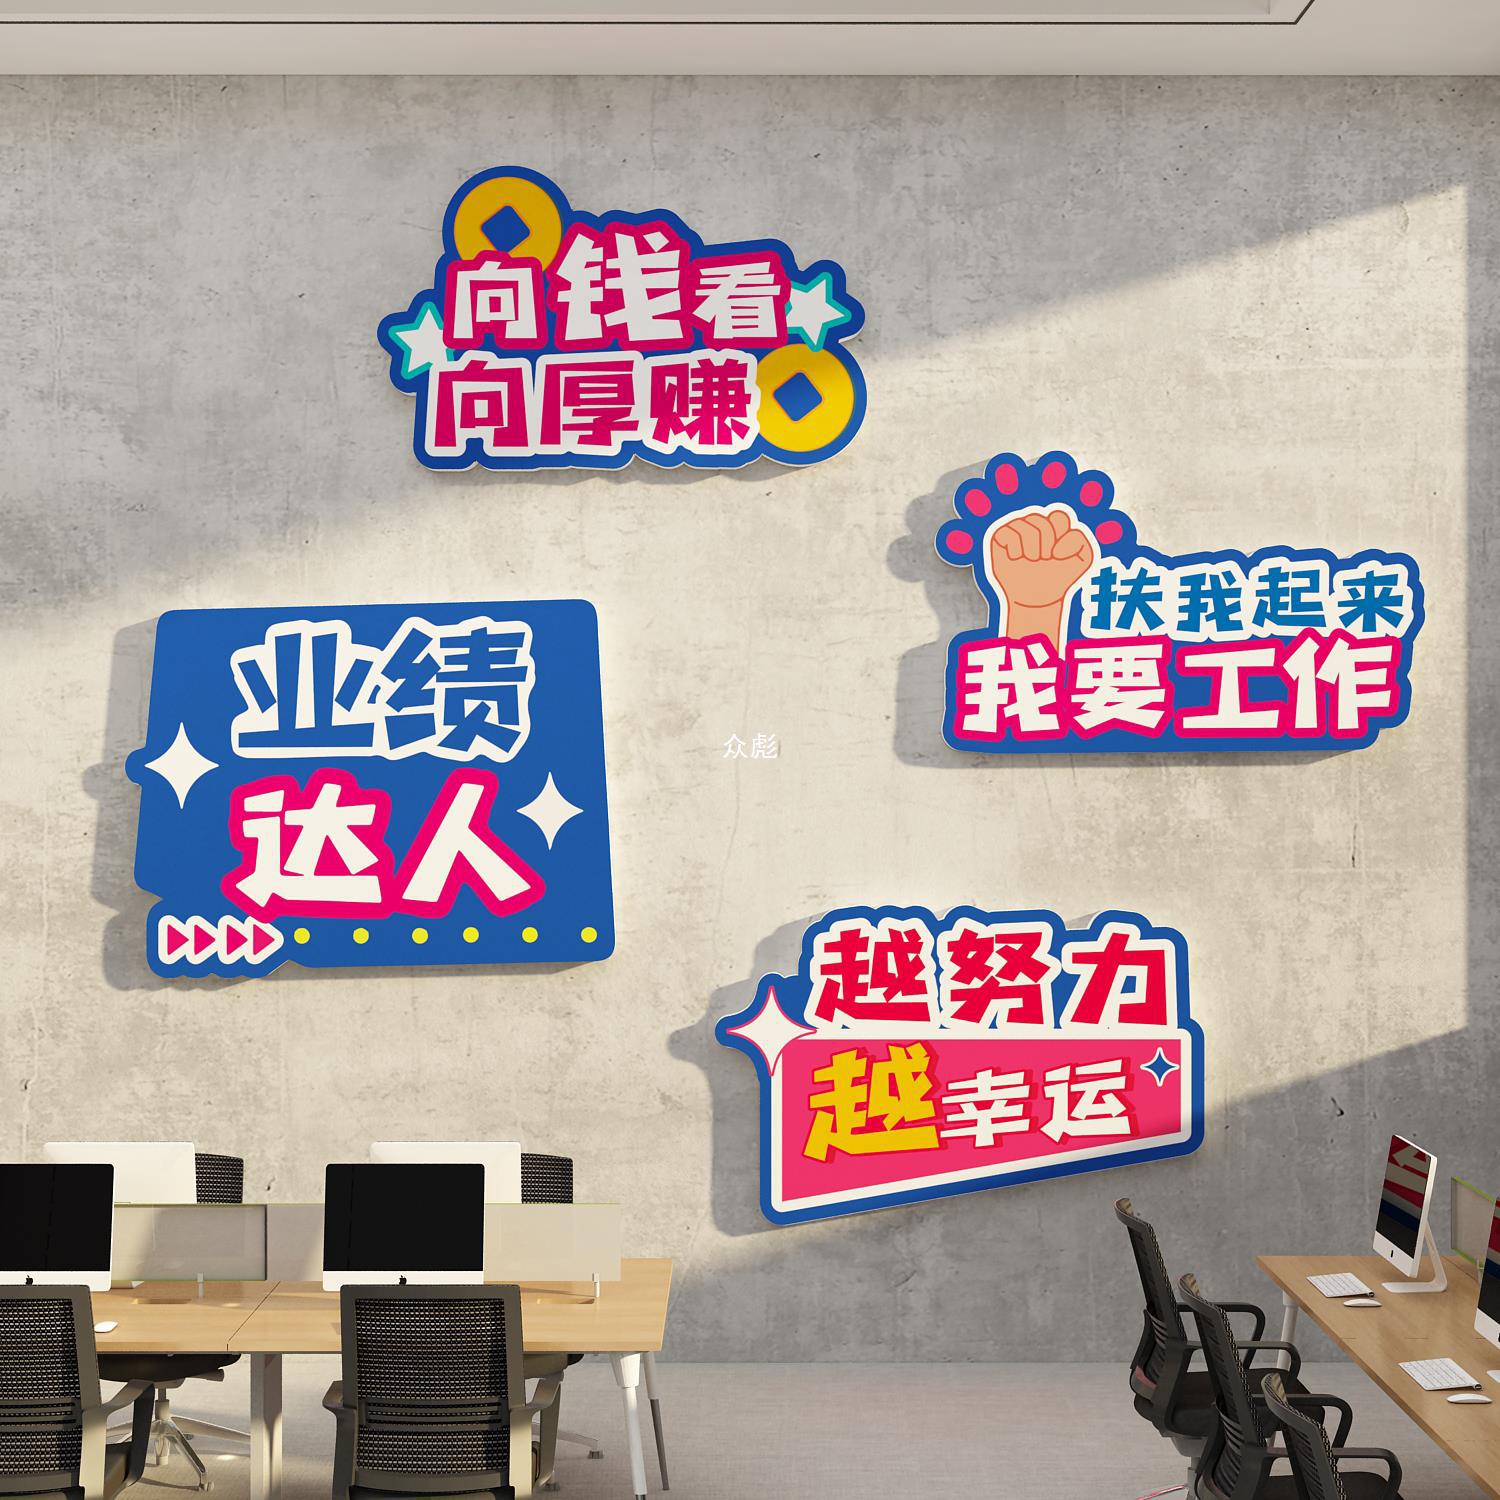 办公室墙面装饰企业文化电商618氛围布置司销售部背景标语贴纸画